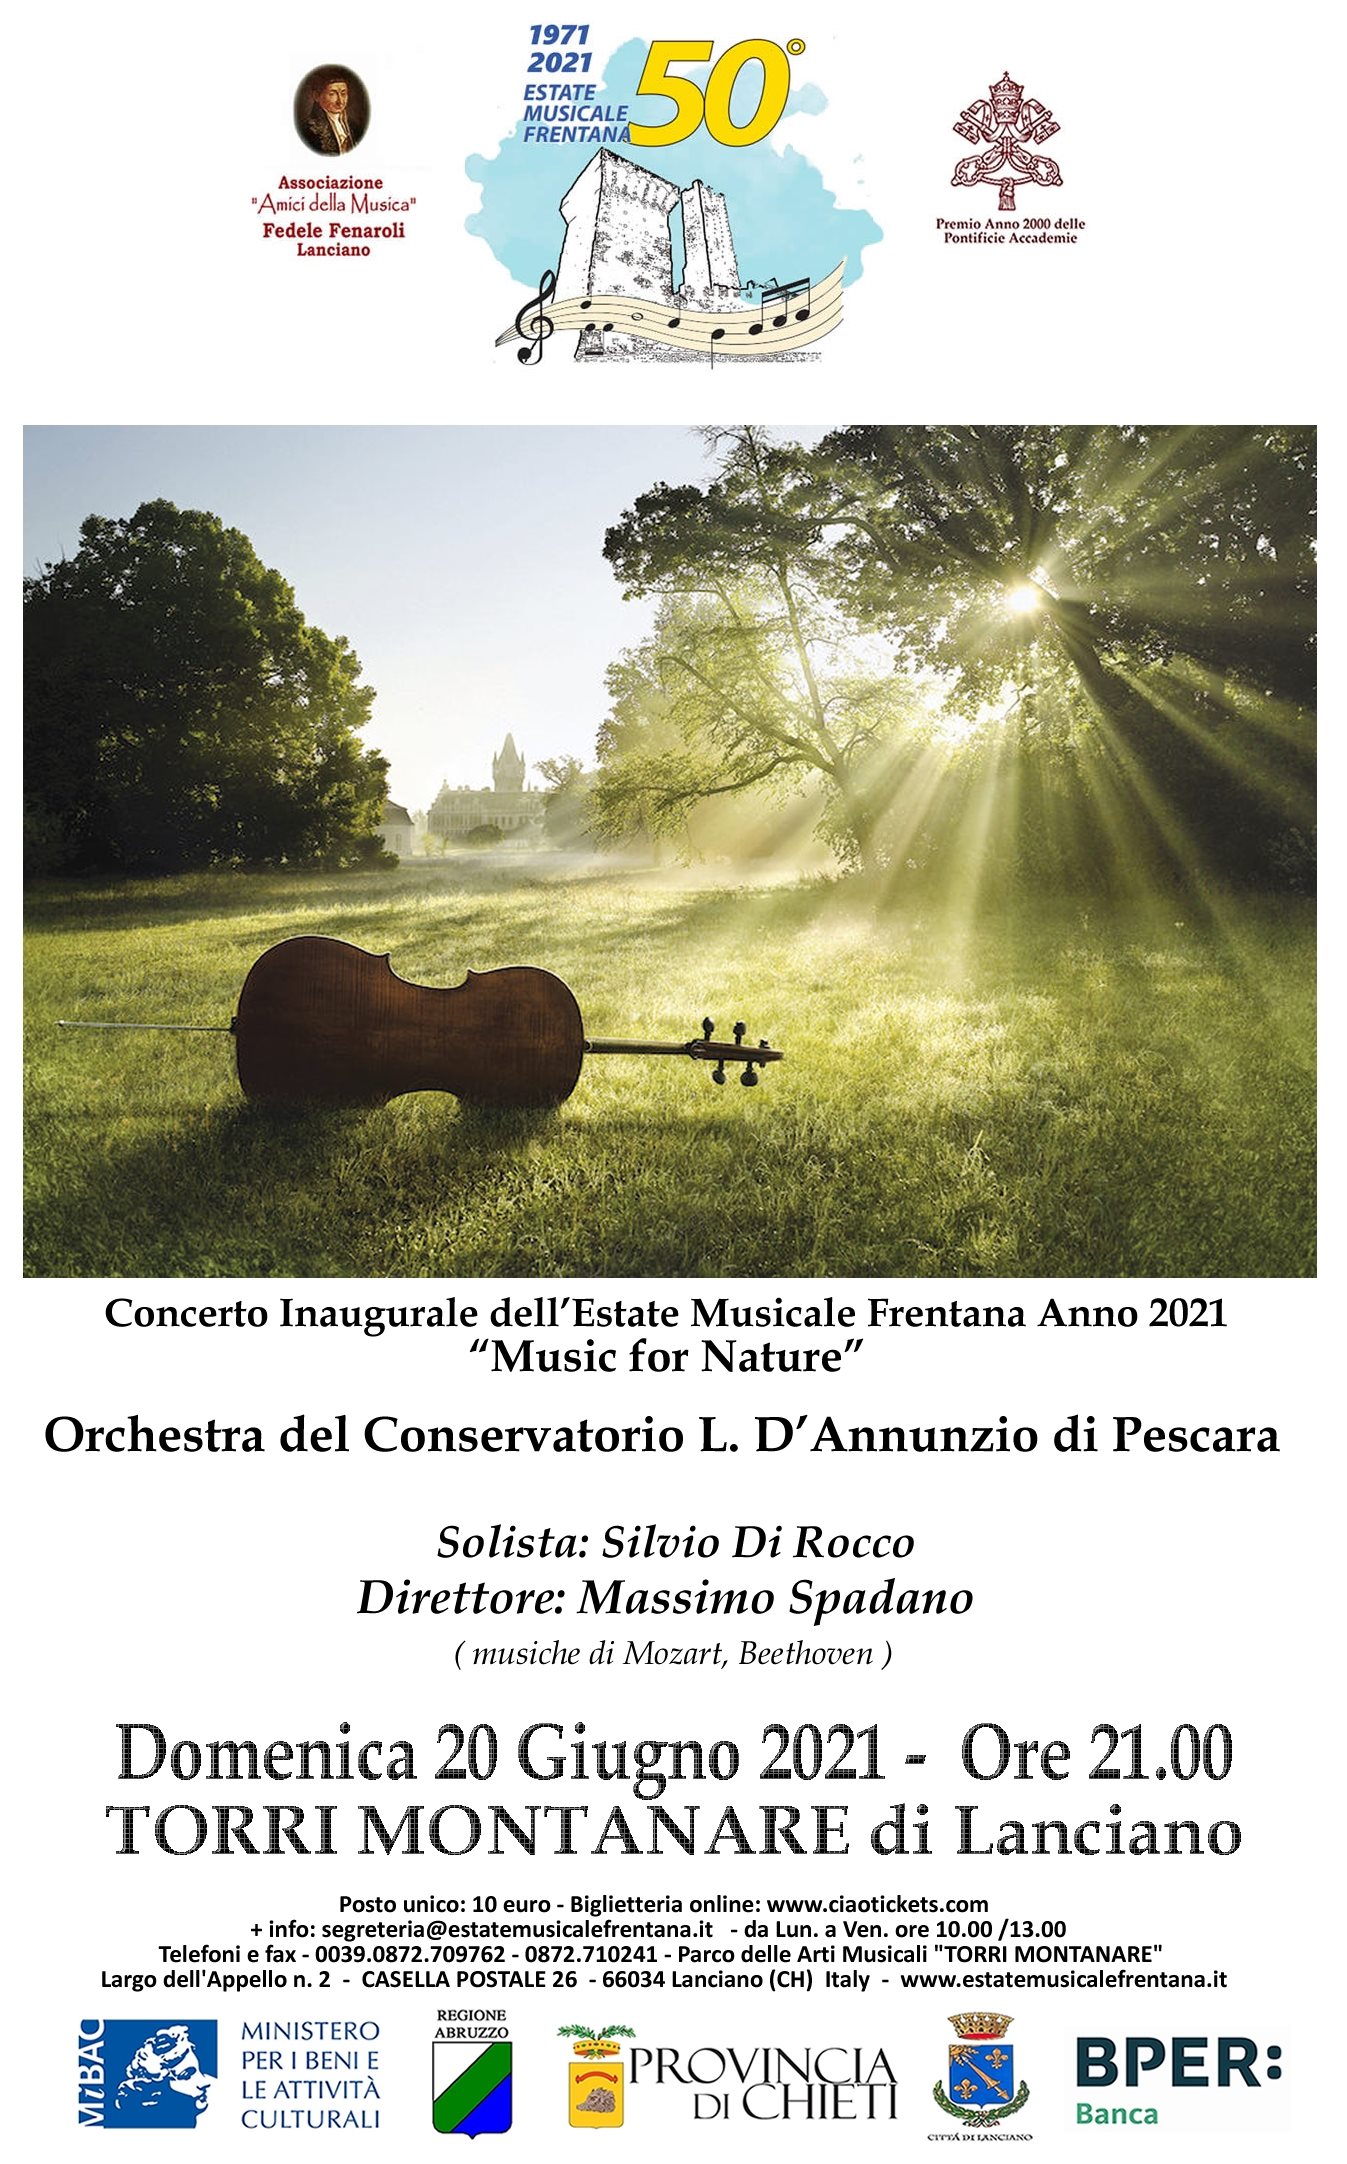 Concerto inaugurale dell’Estate Musicale Frentana anno 2021 “Music for Nature”